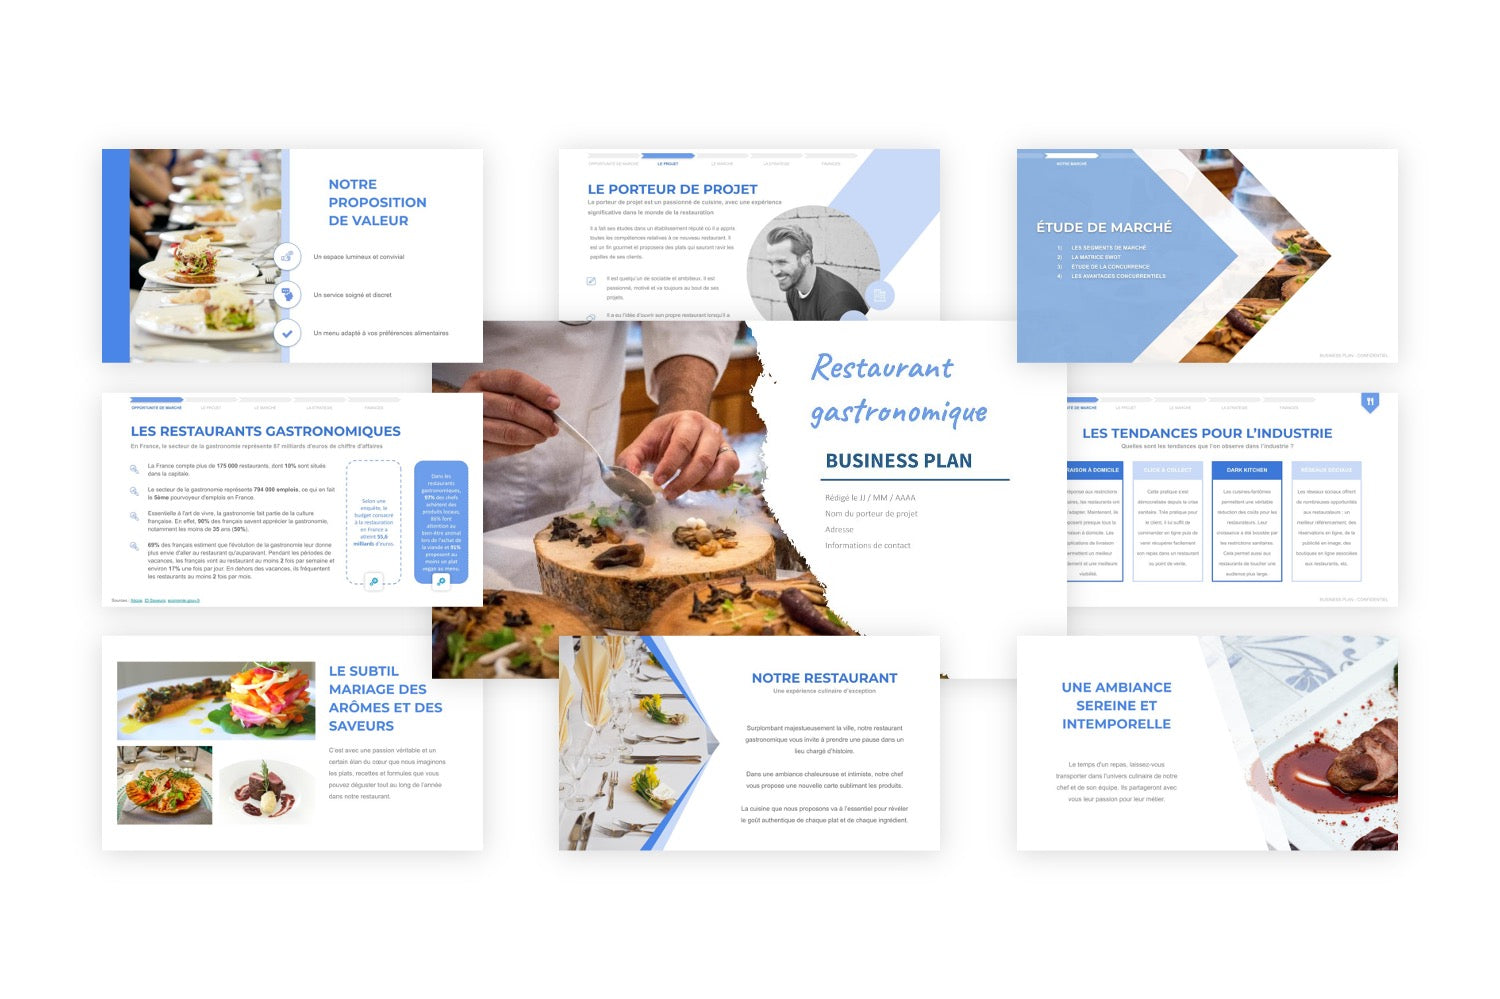 Restaurant Gastronomique Business Plan